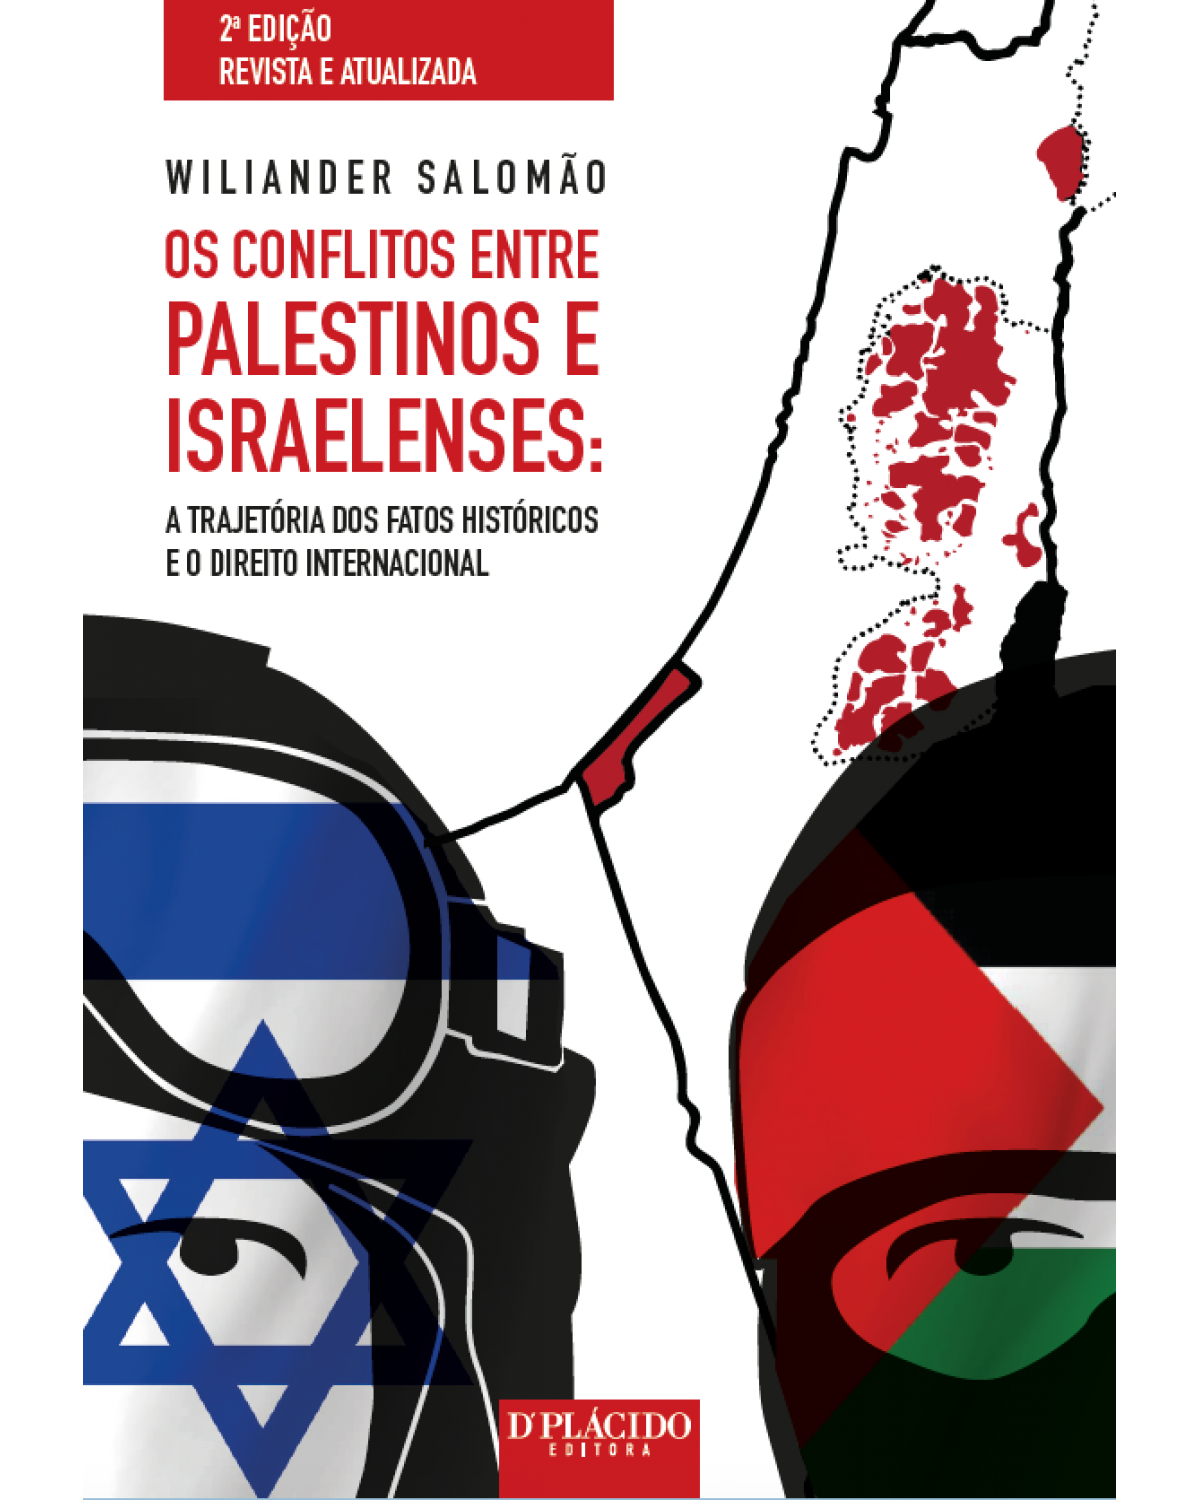 Os conflitos entre palestinos e israelenses: a trajetória dos fatos históricos e o direito internacional - 2ª Edição | 2016